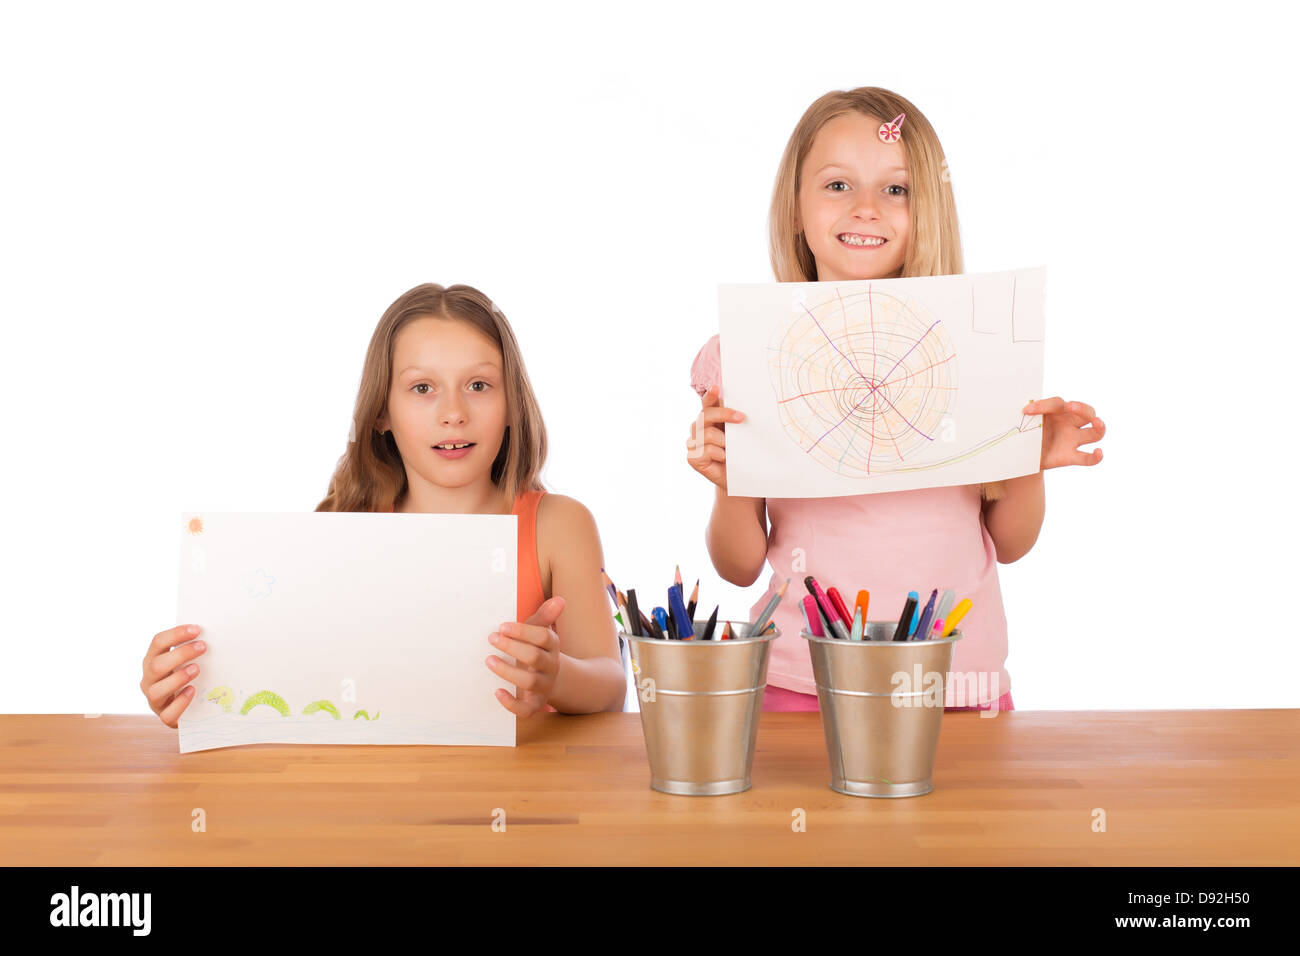 Deux sœurs aux cheveux blonds en souriant et montrant leur super dessins à une table en bois avec porte-crayons métalliques. Banque D'Images